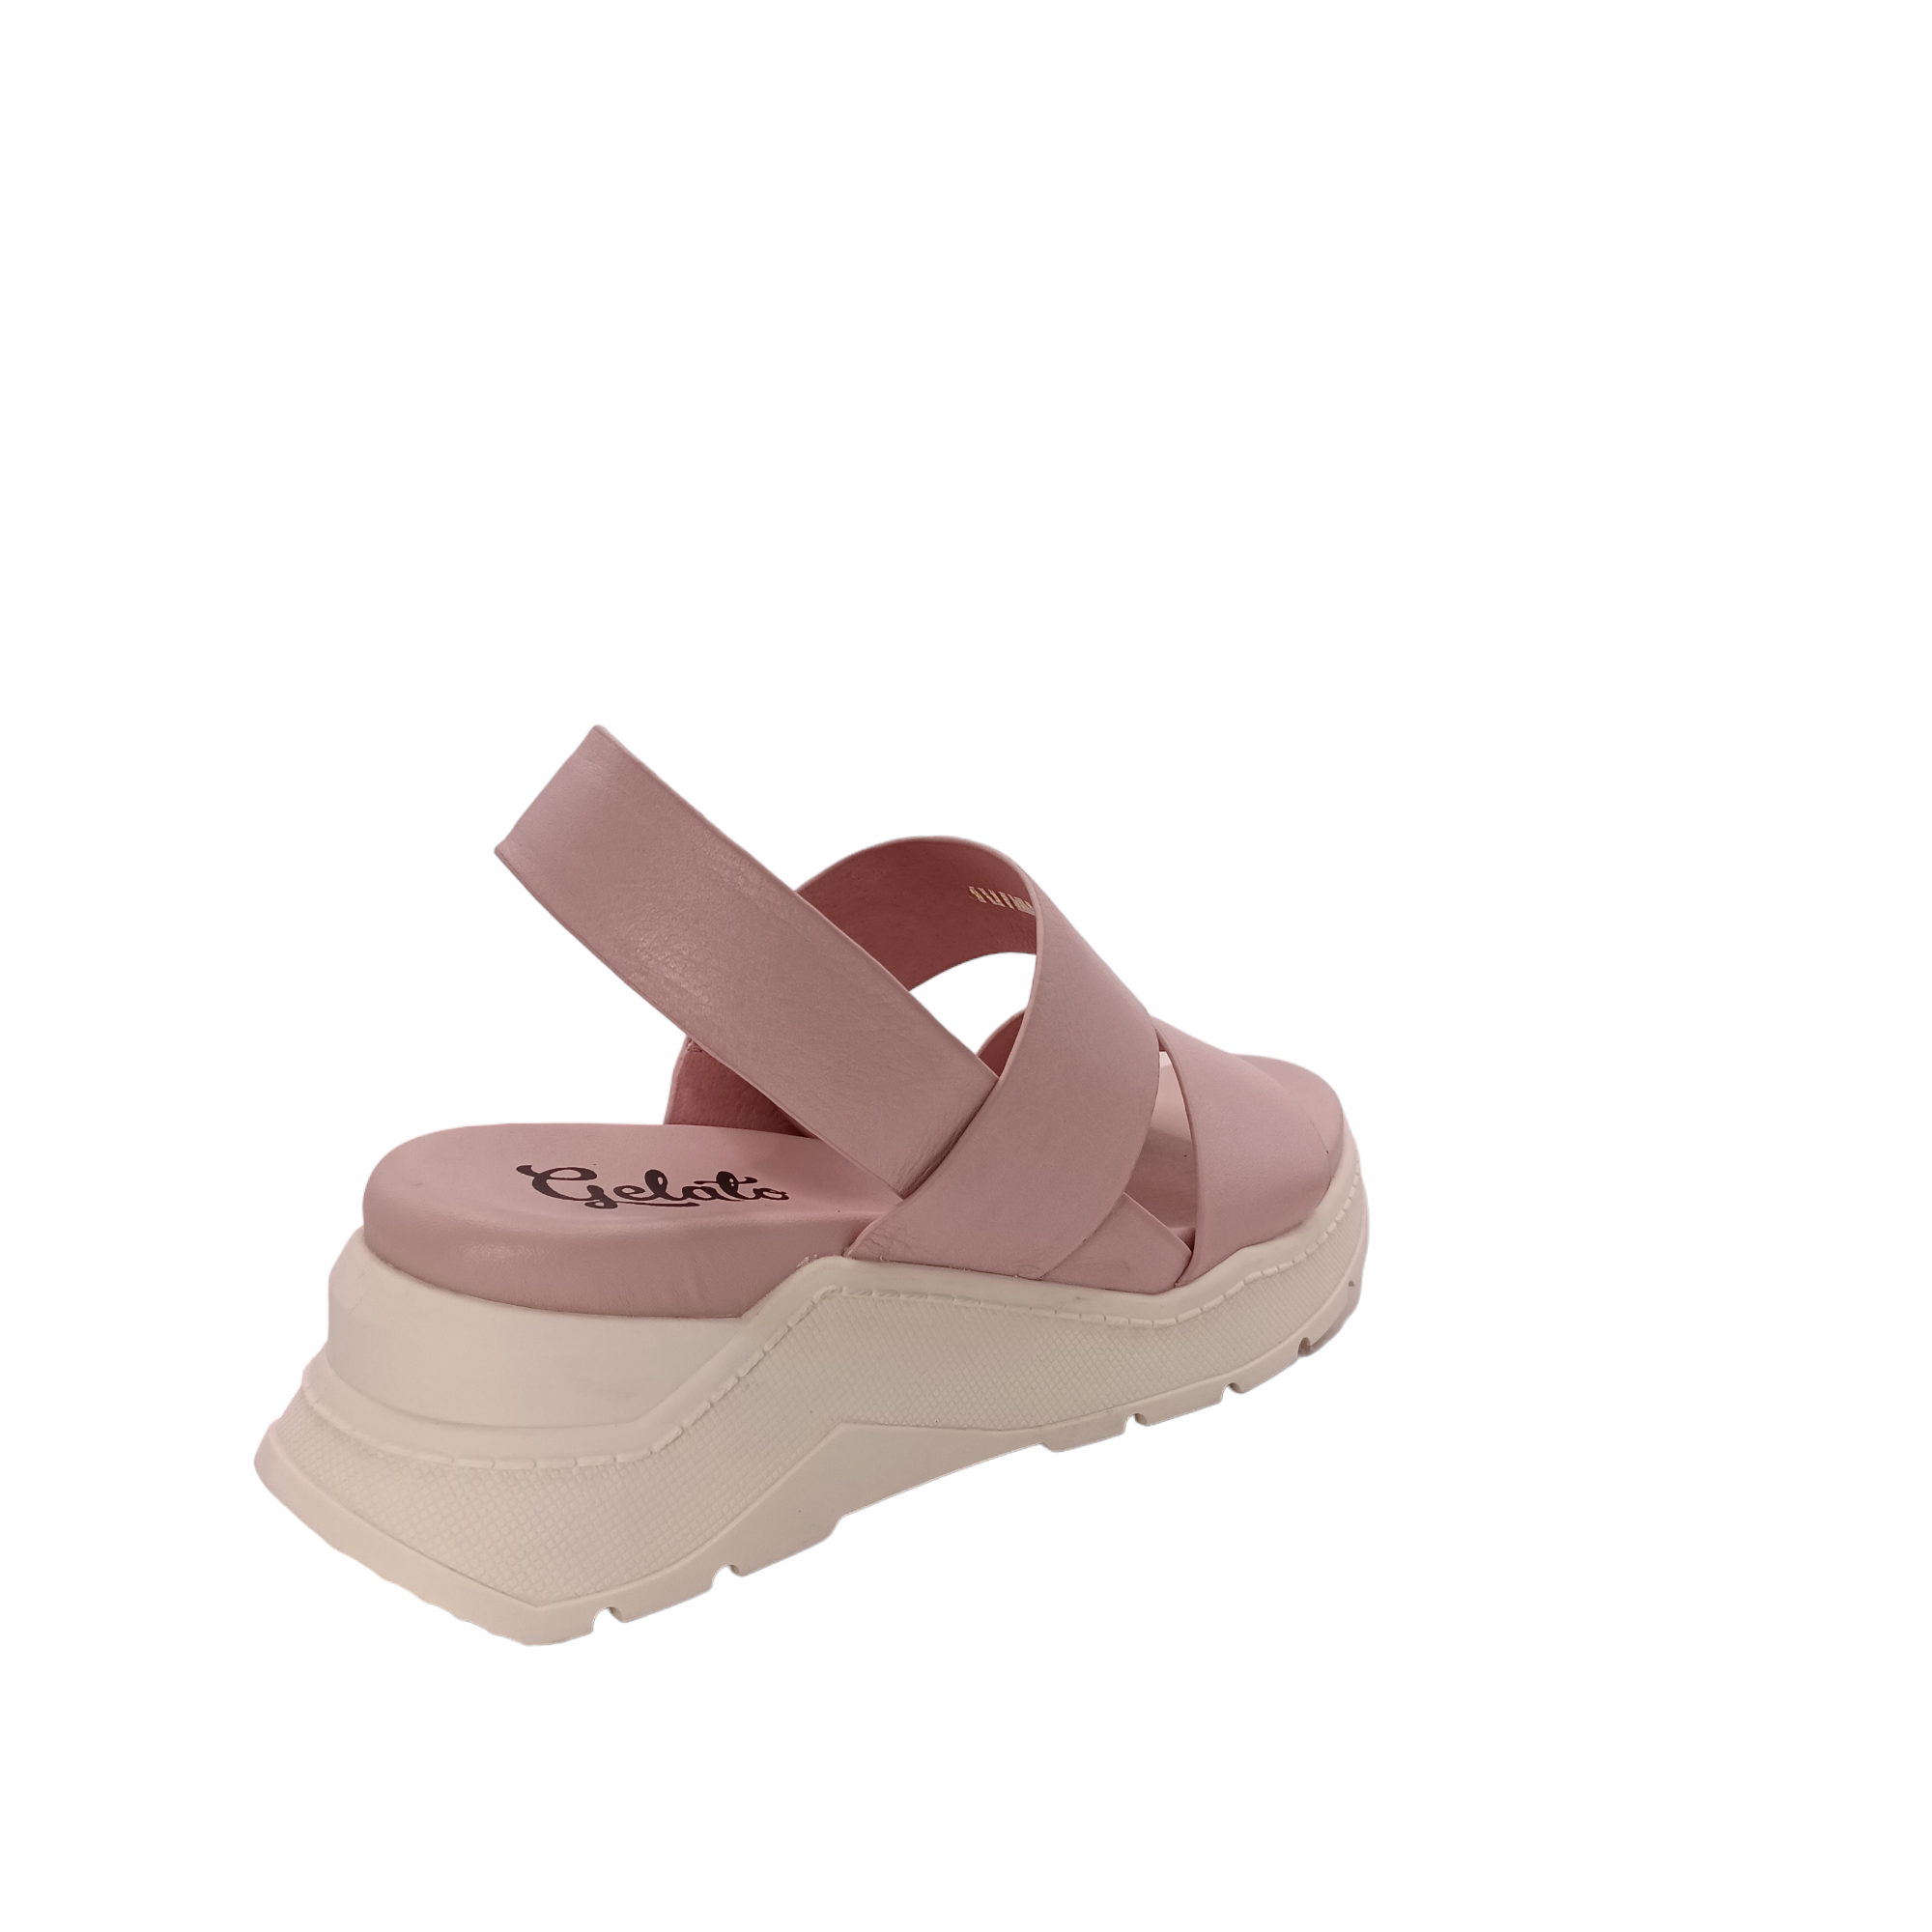 Force - shoe&me - Gelato - Sandal - Platform, Sandals, Summer, Womens